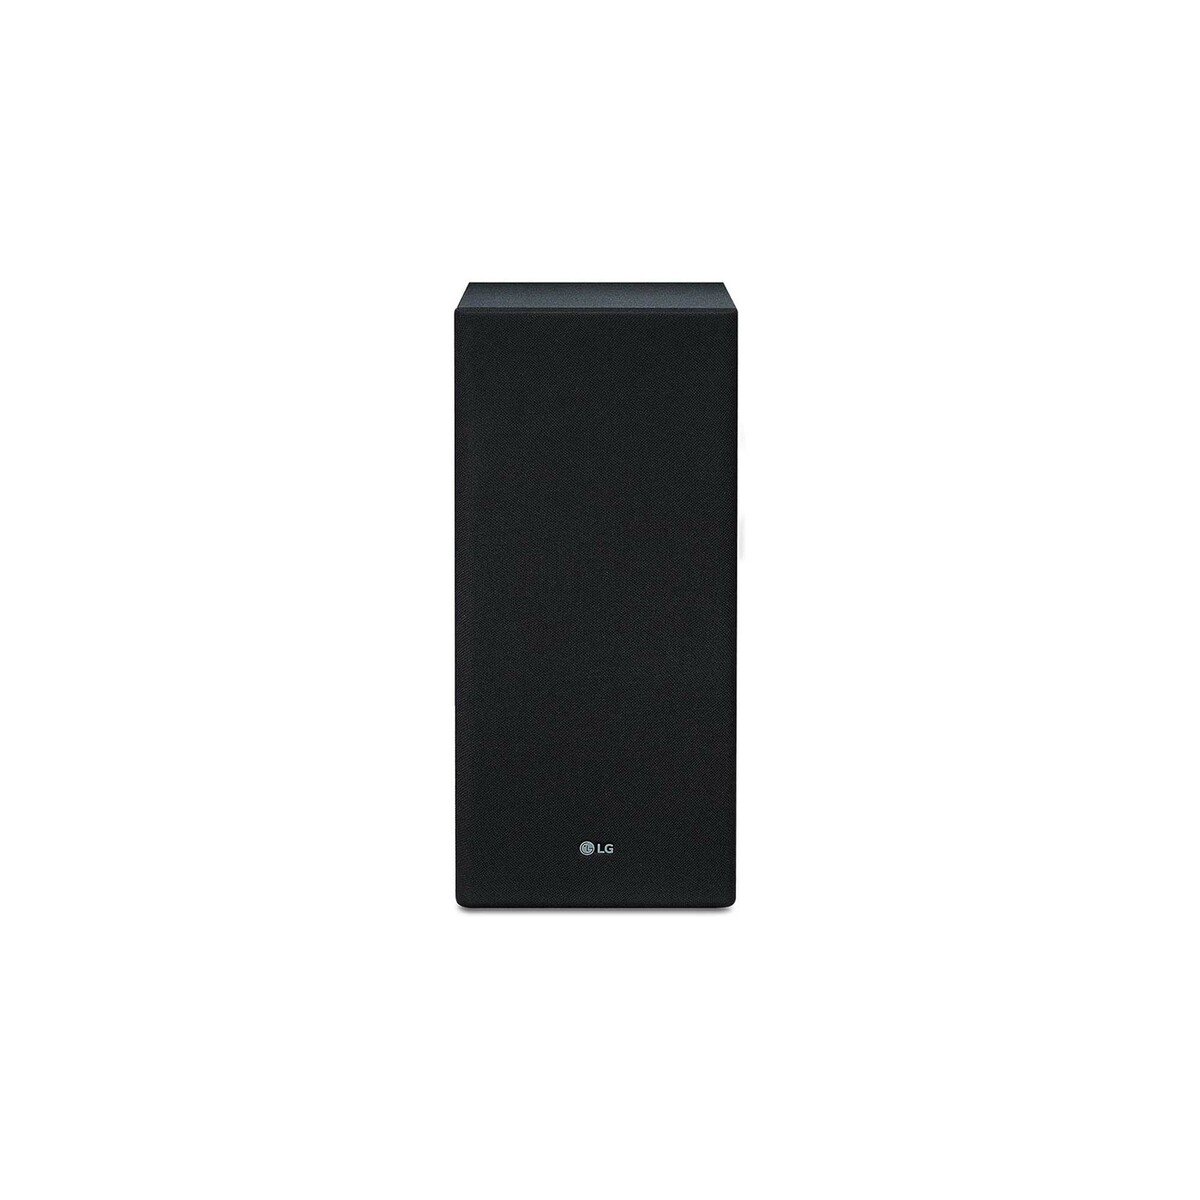 LG 2.1 Channel Sound Bar SL5Y 400W